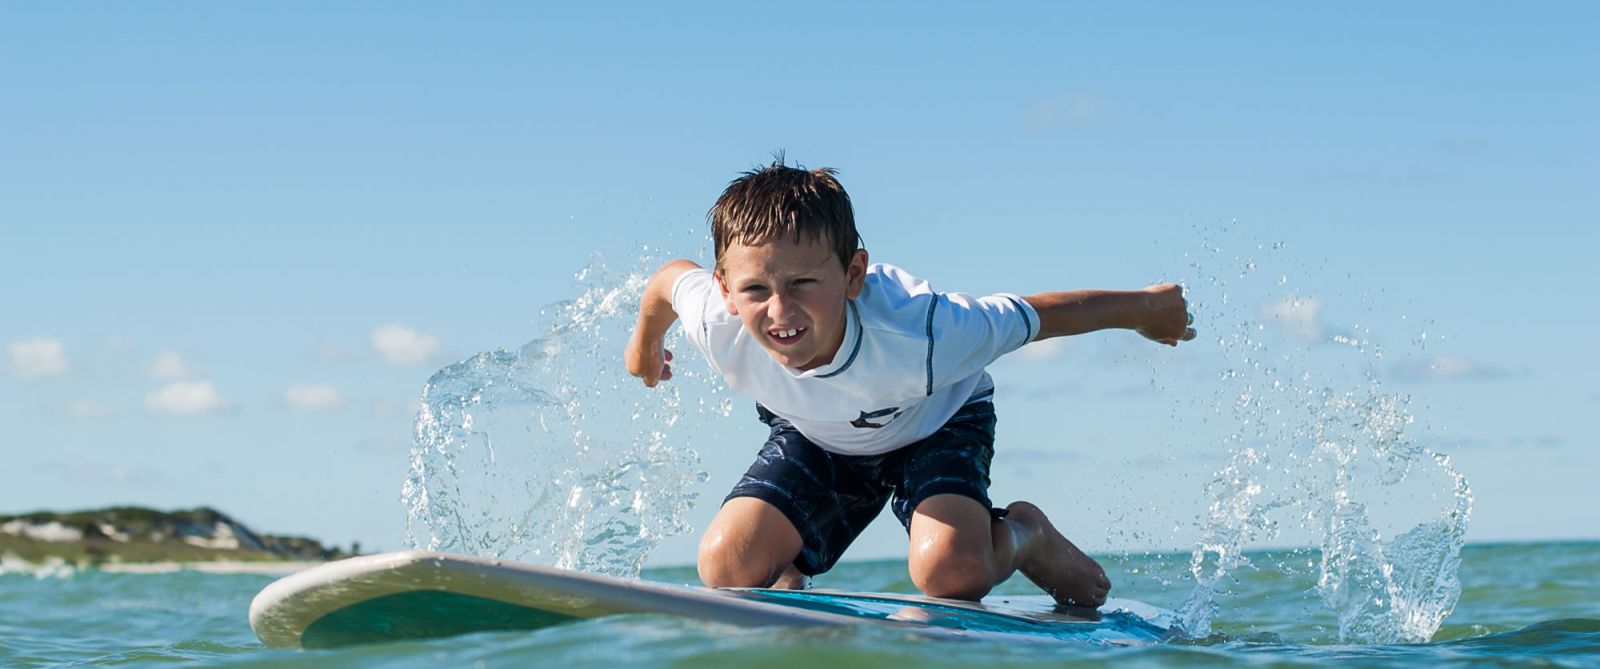 Background image of boy on paddleboard